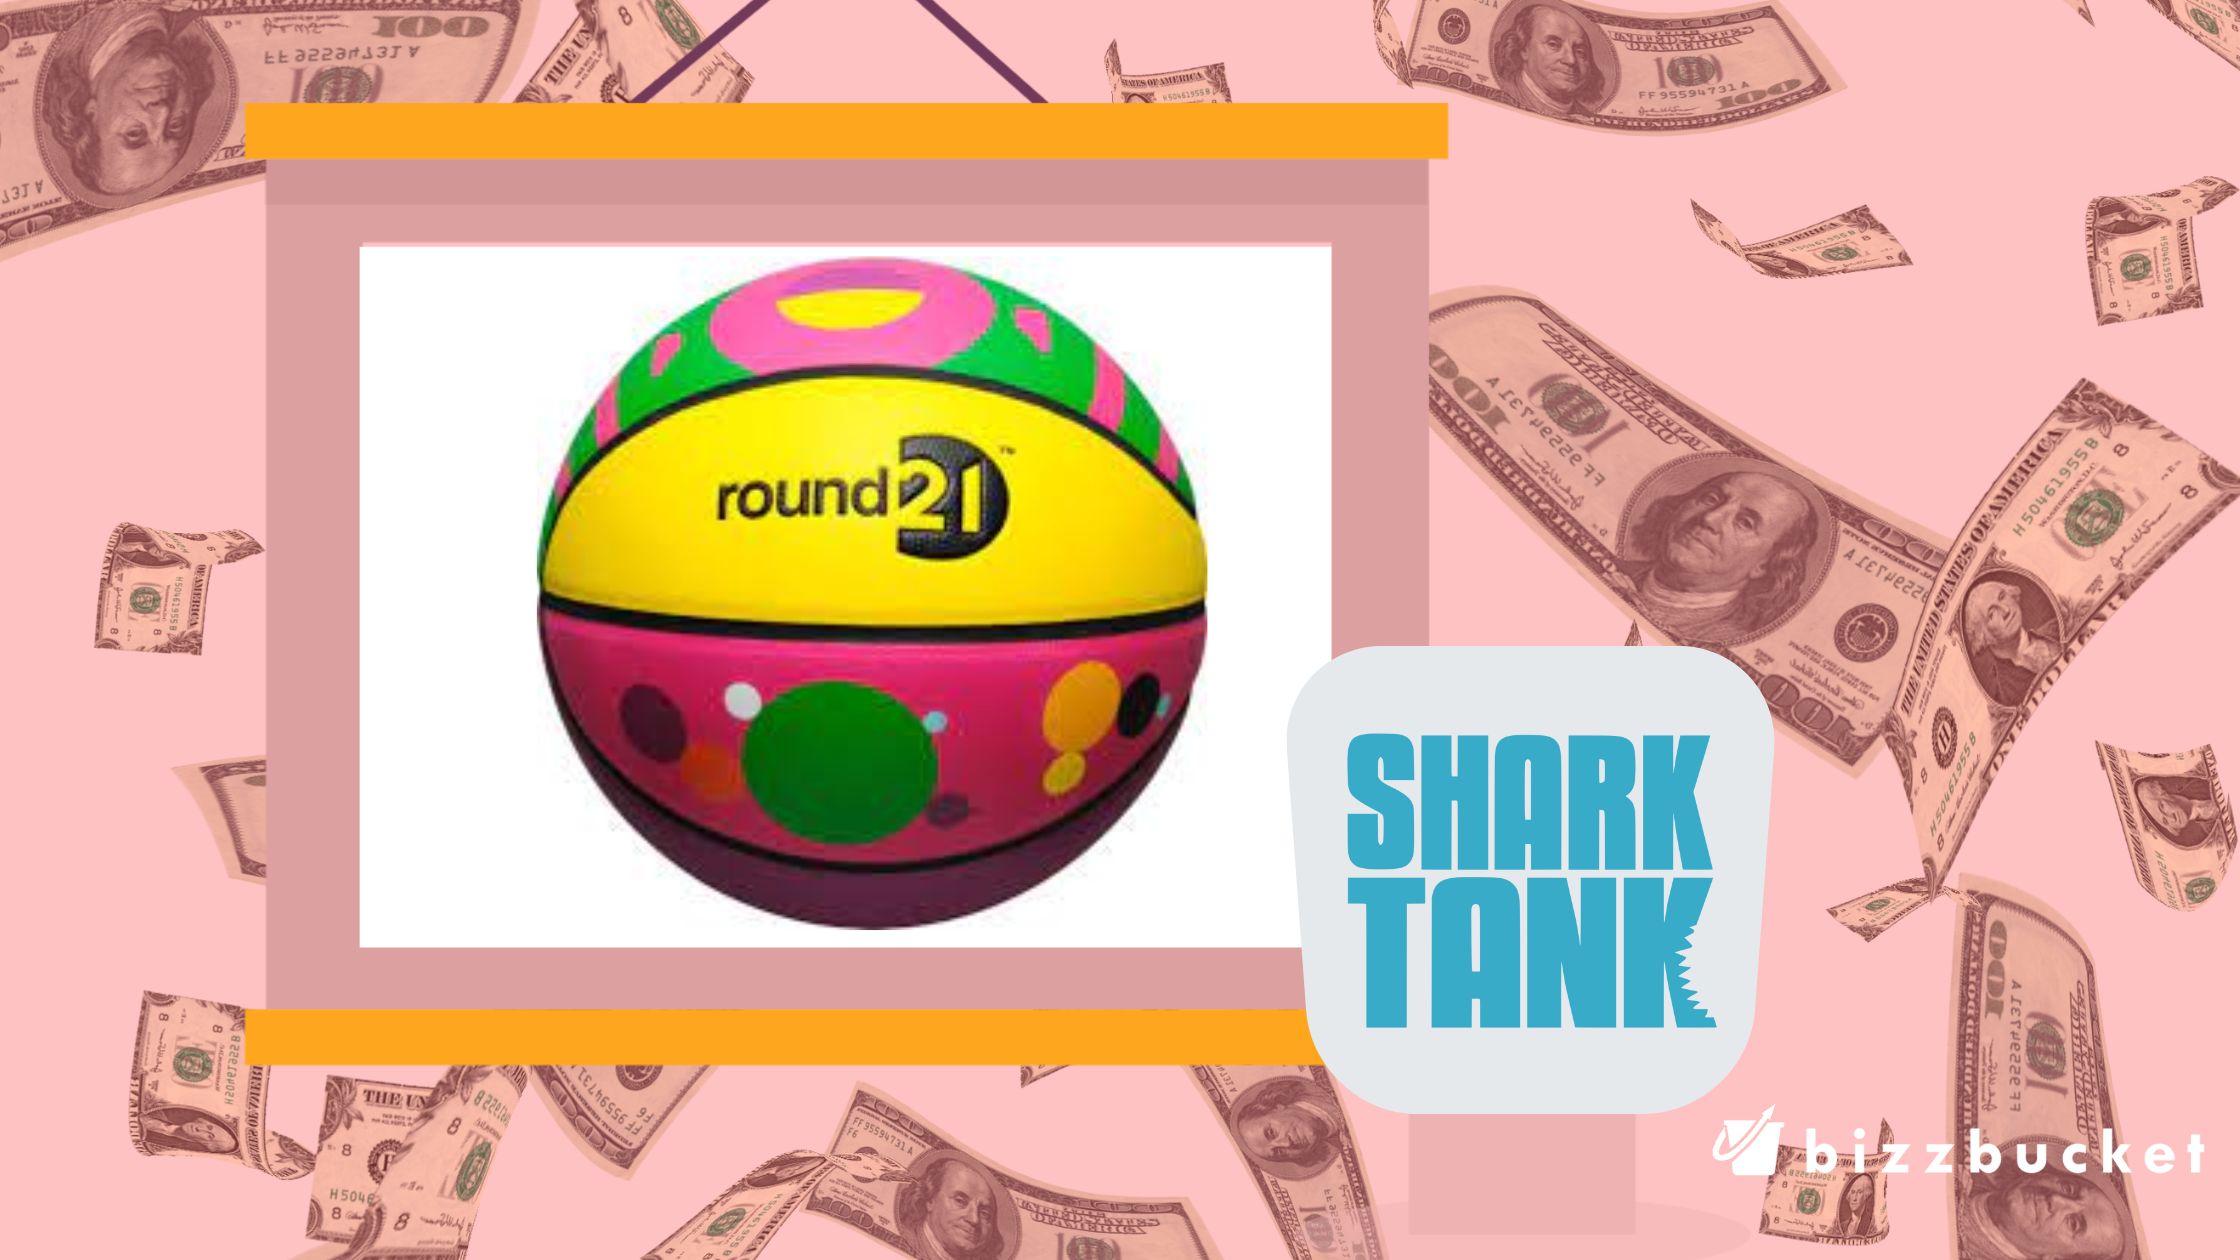 Round 21 shark tank update